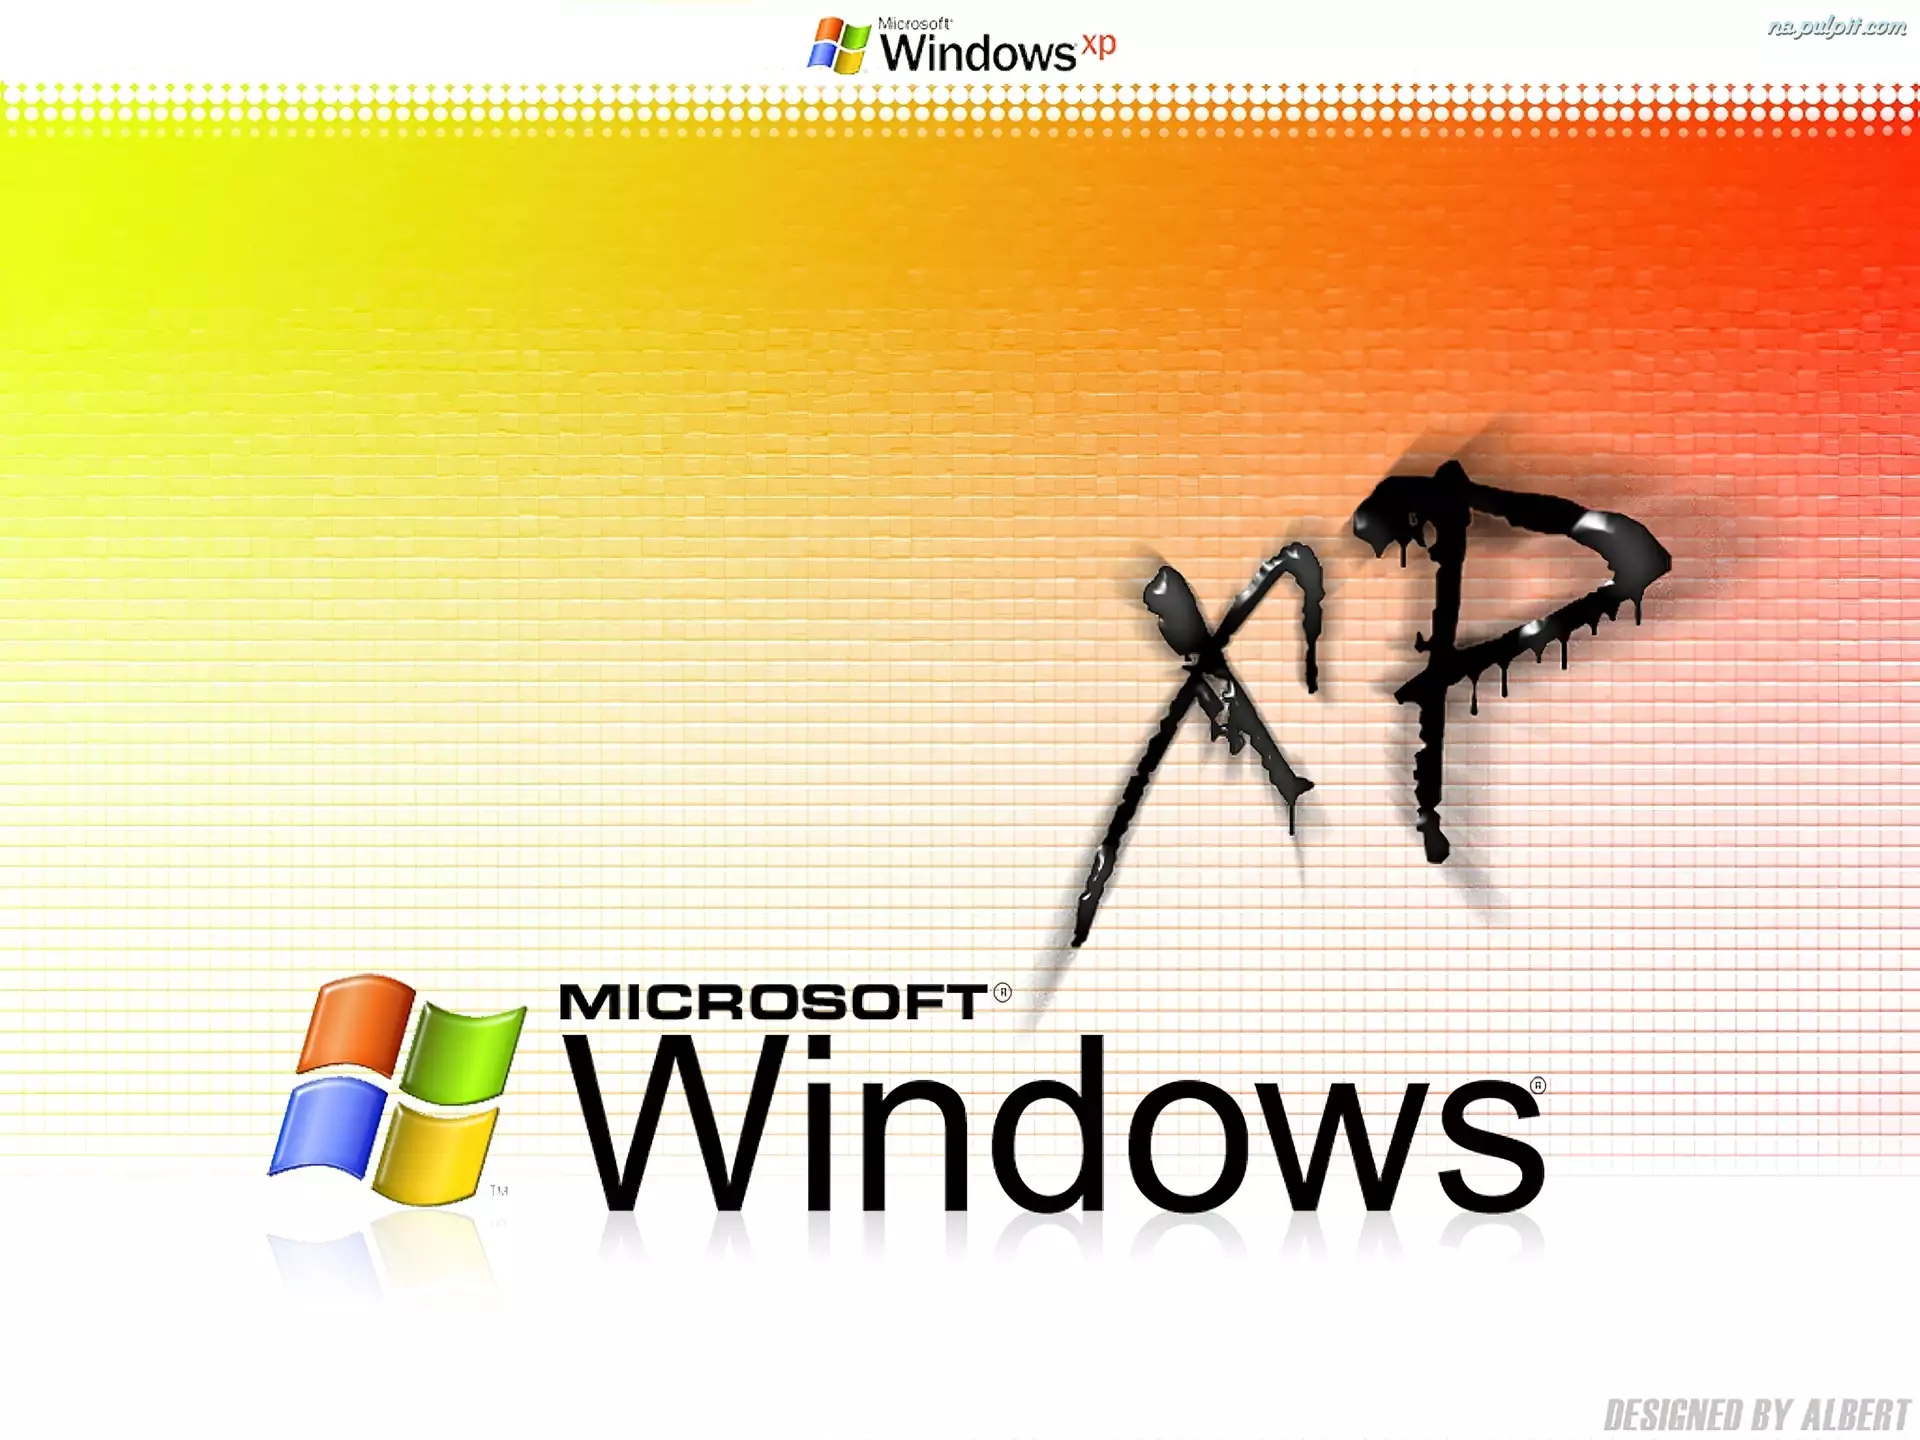 zeszyt, Windows XP